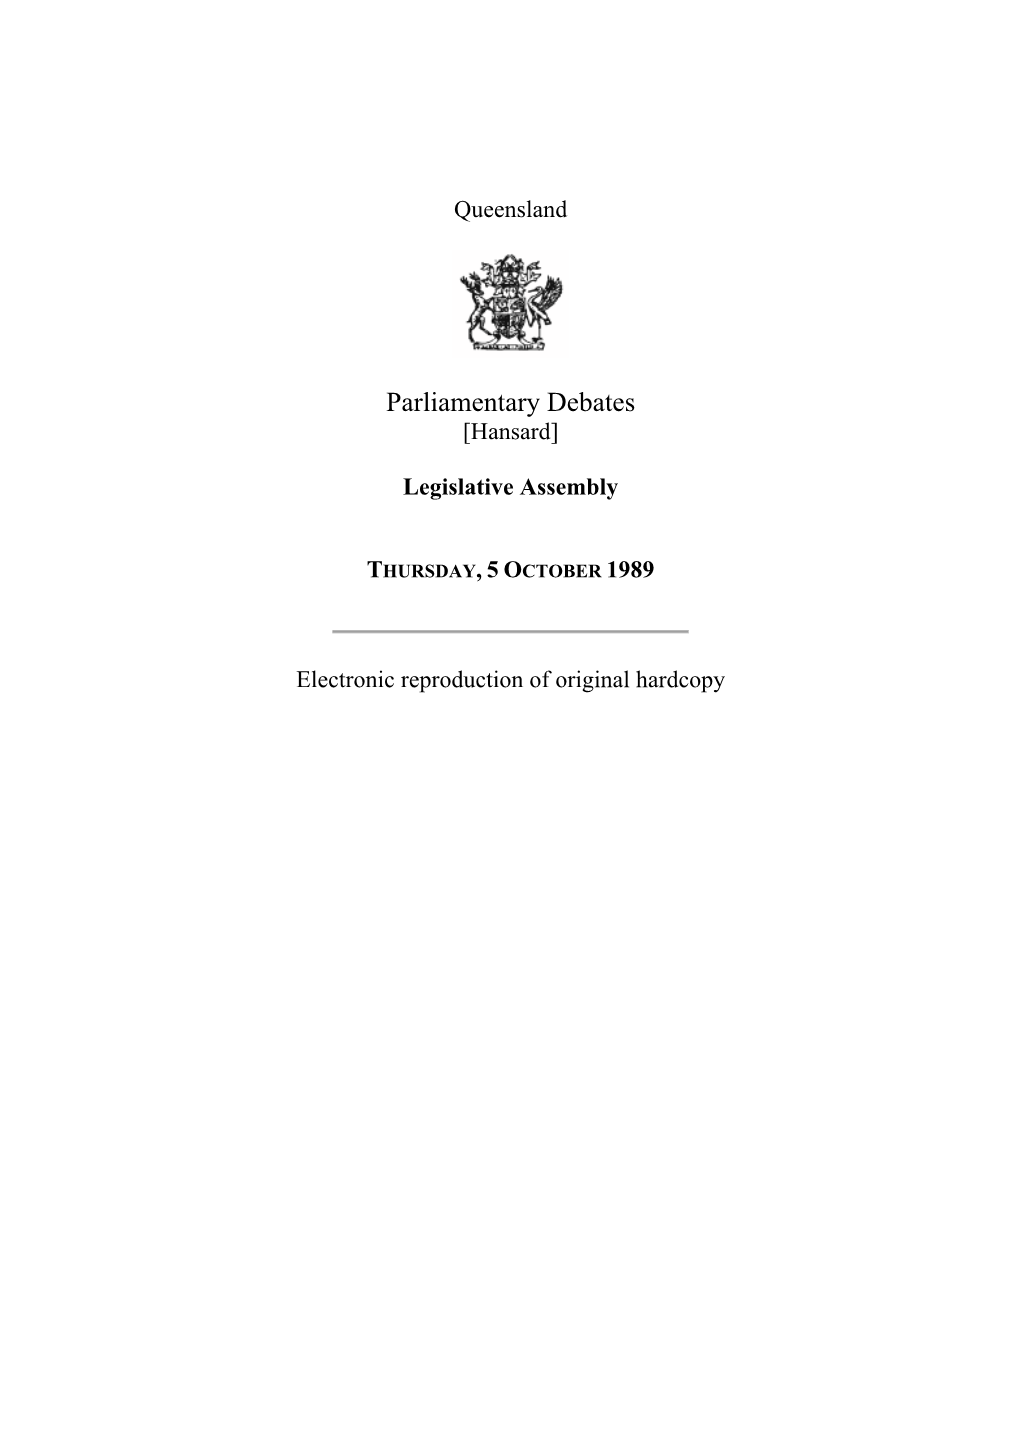 Legislative Assembly Hansard 1989